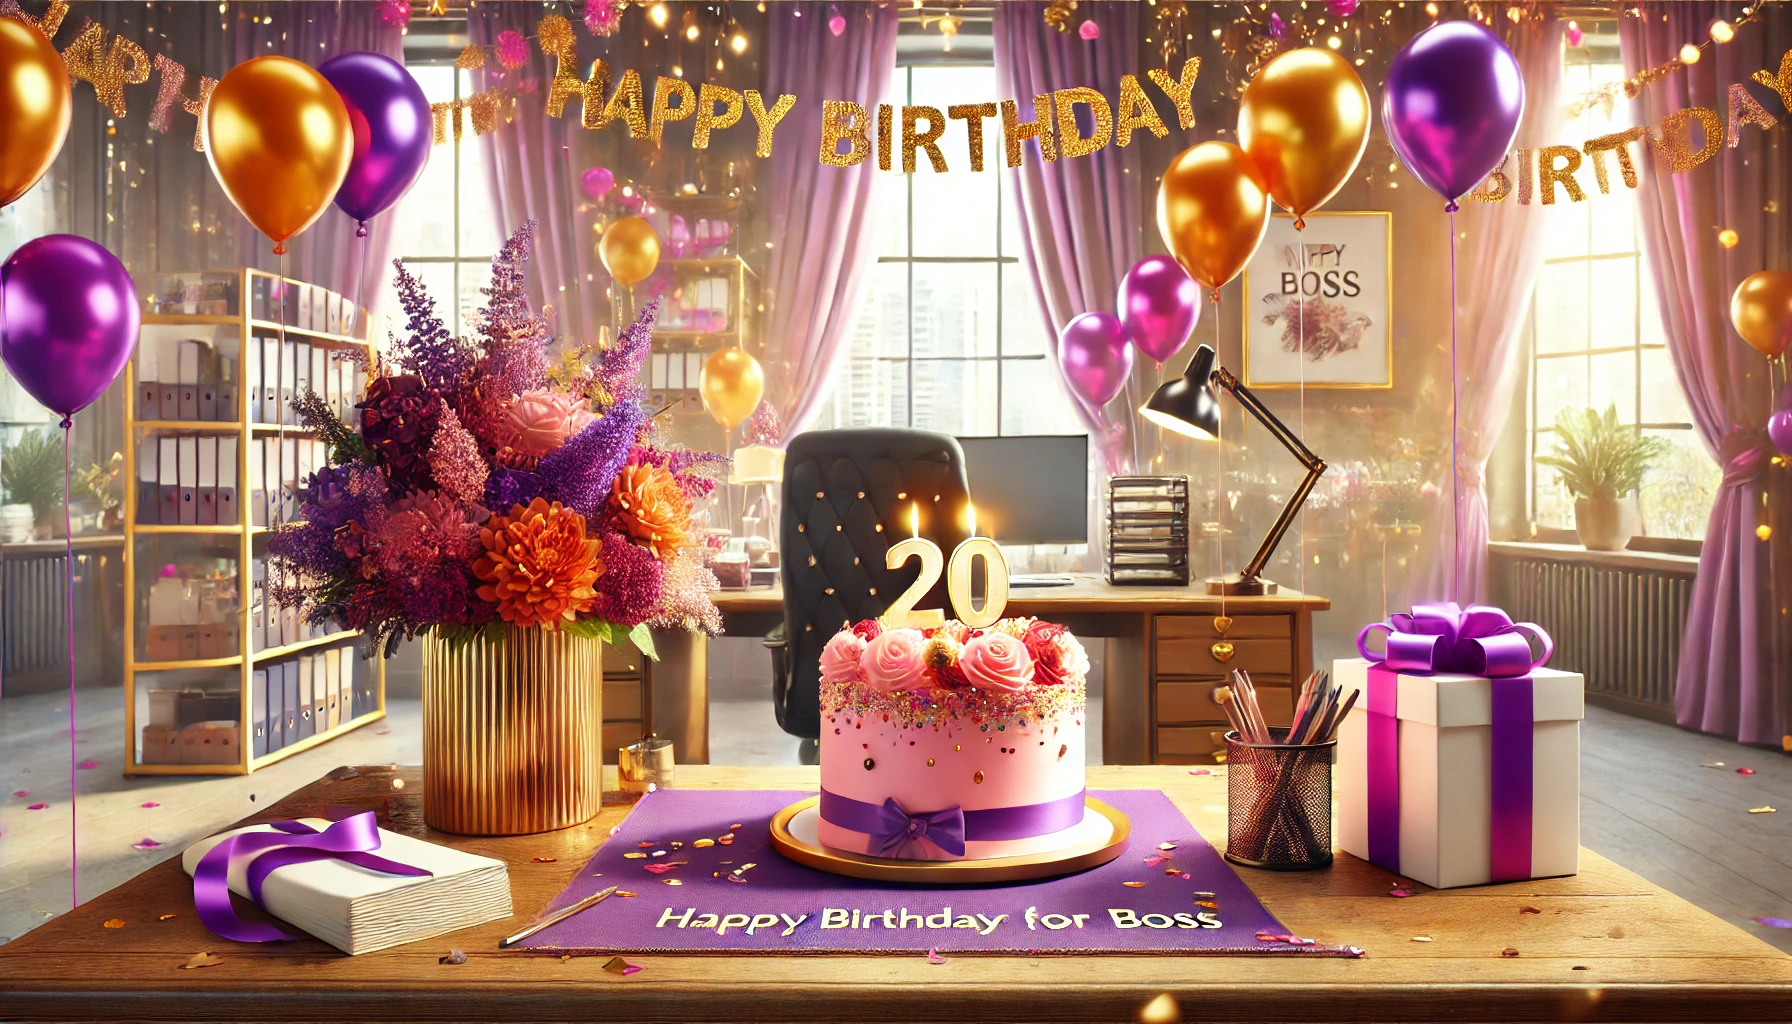 Życzenia urodzinowe dla szefa i szefowej, które zapamiętają na zawsze! Sprawdź najlepsze pomysły na prezenty i inspirujące życzenia!